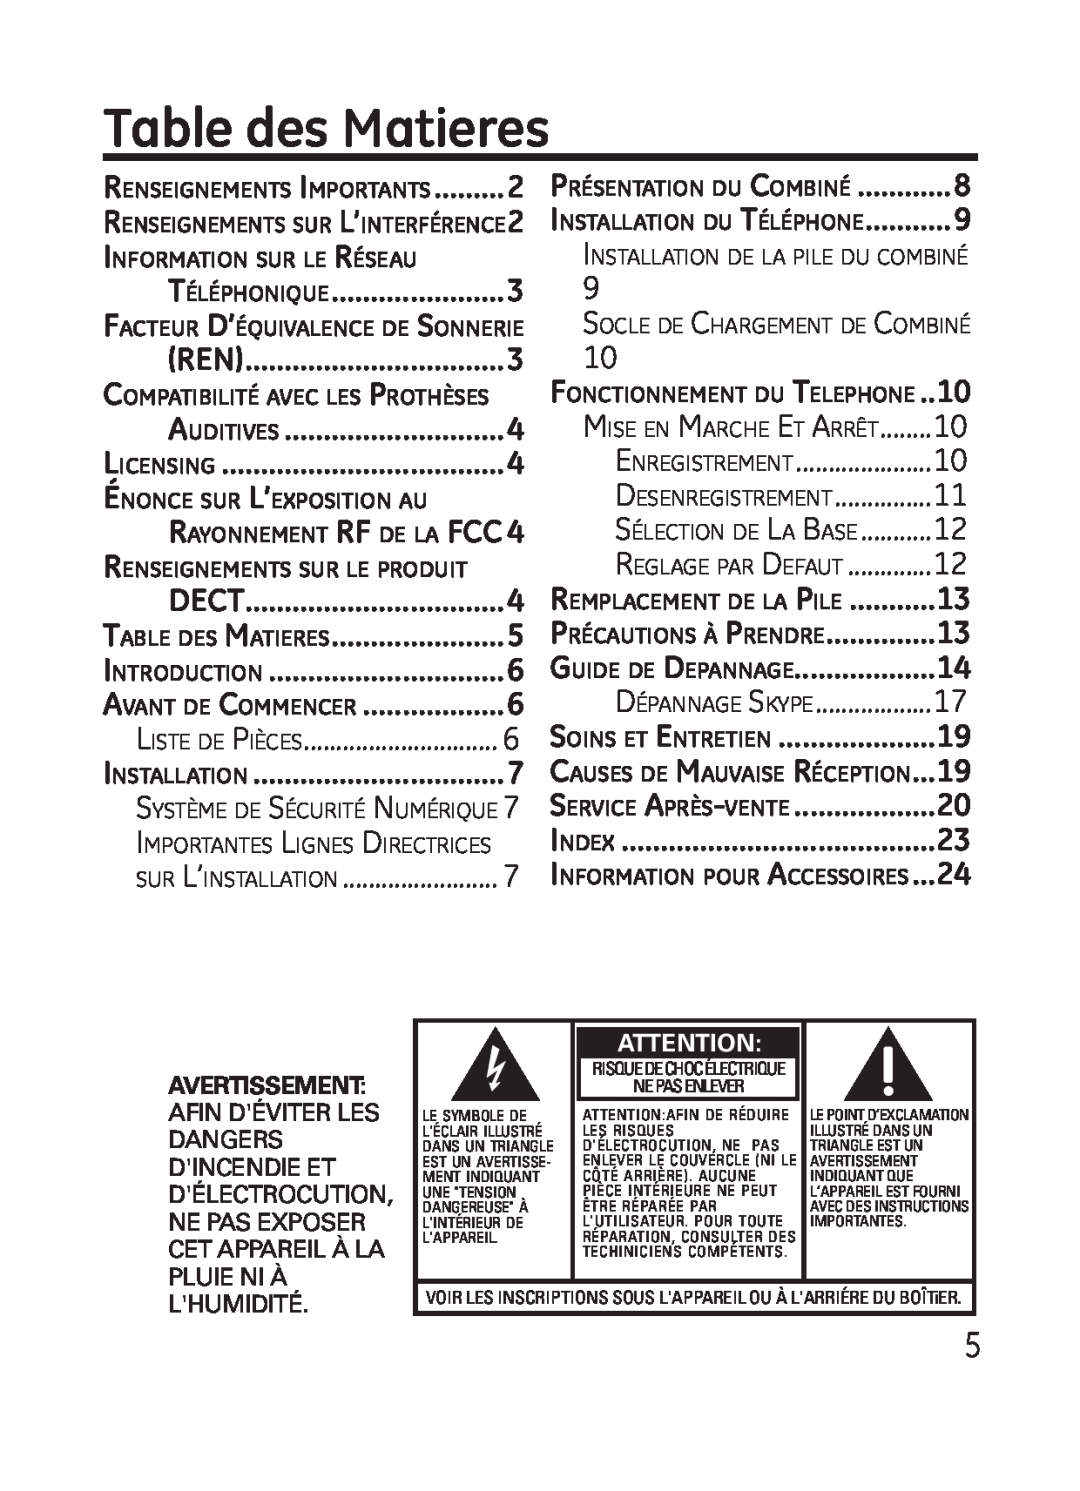 GE 28301 manual Table des Matieres, Téléphonique, Introduction, Avant de Commencer, Installation, sur L’installation 